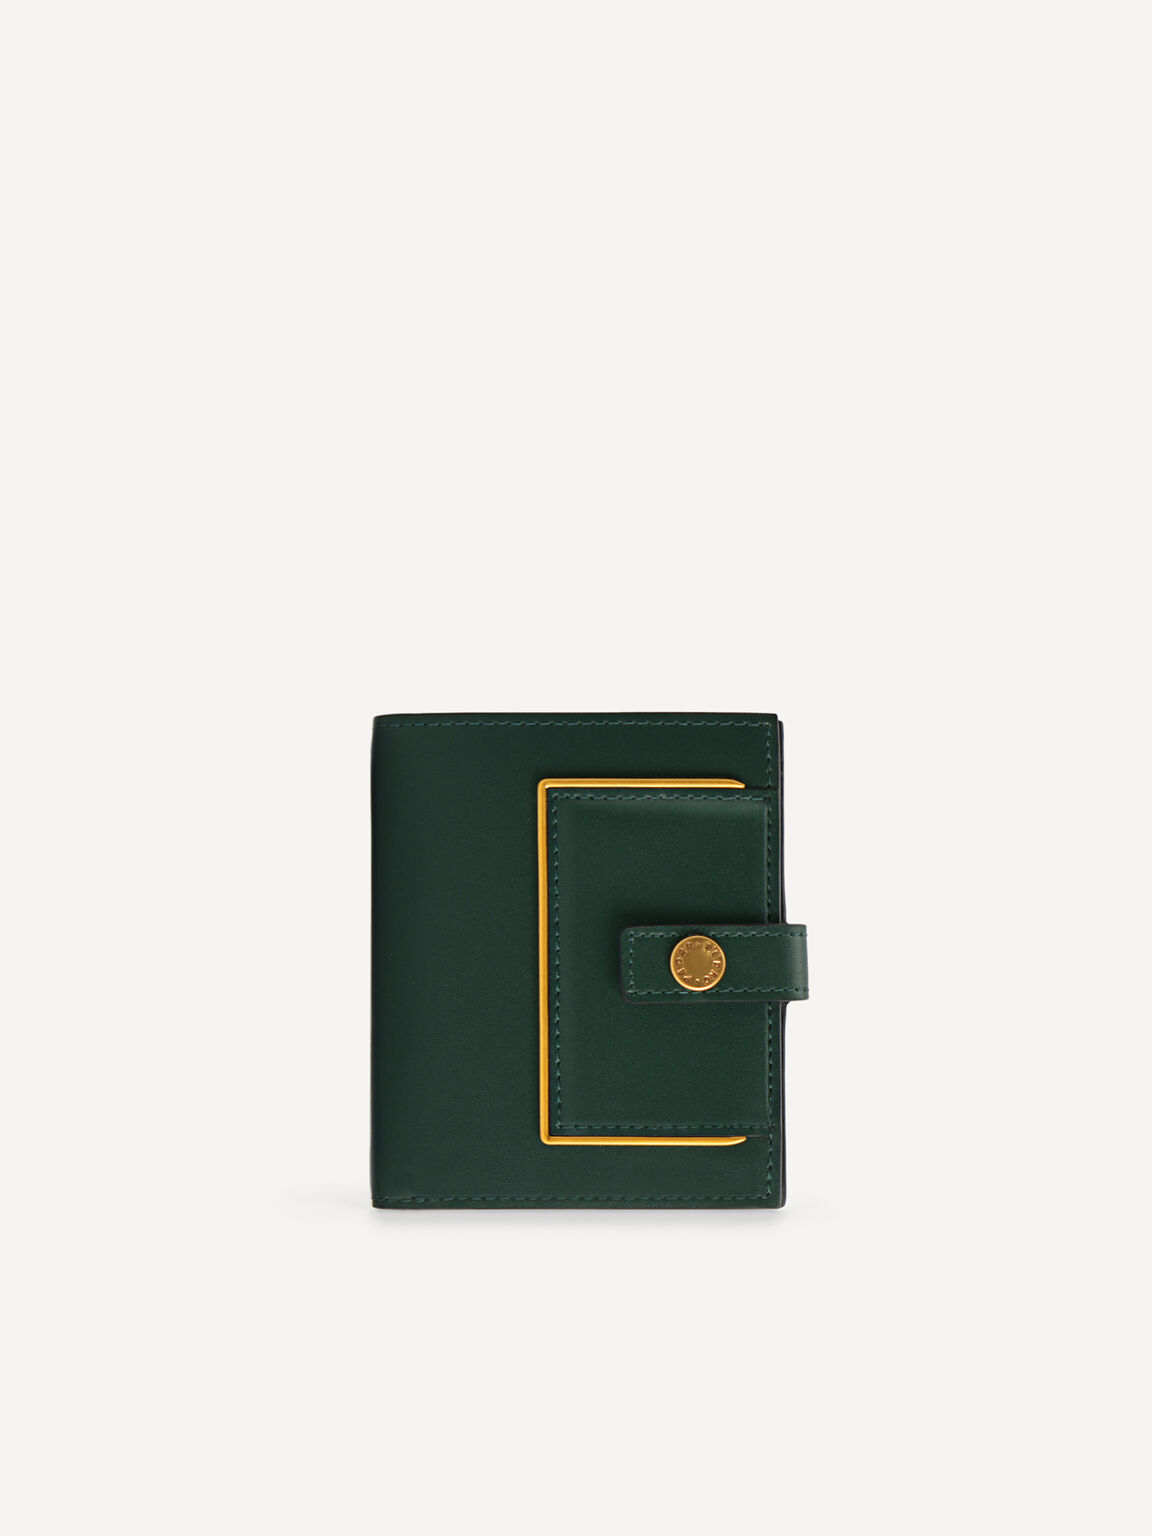 Monochrome Bi-Fold Leather Wallet, Dark Green